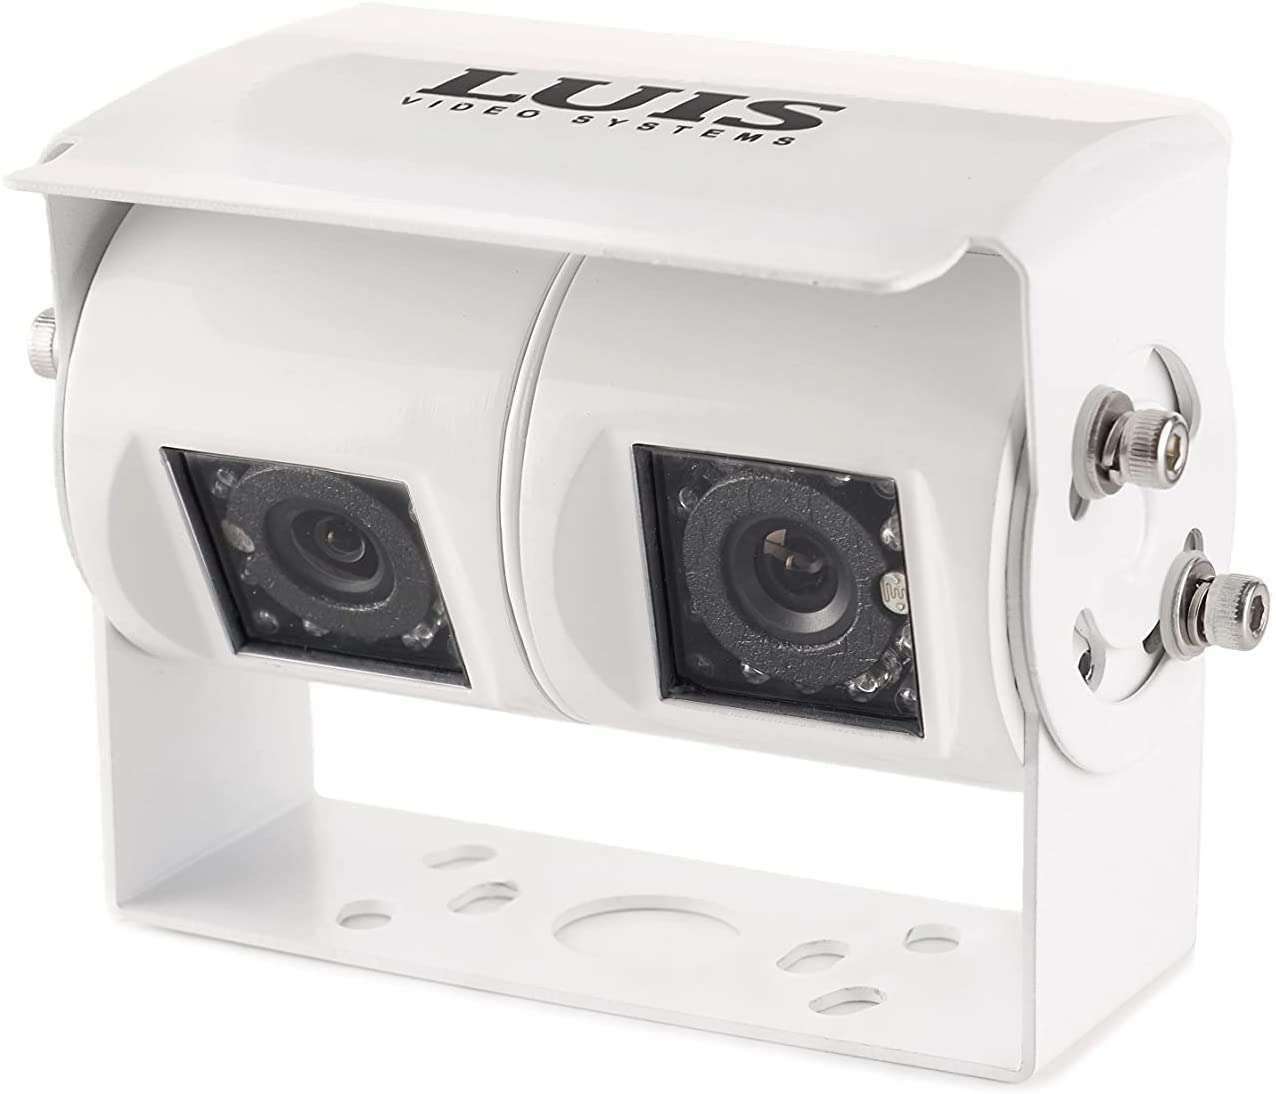 Caméra de recul CCD 600 lignes avec vision nocturne - Équipements